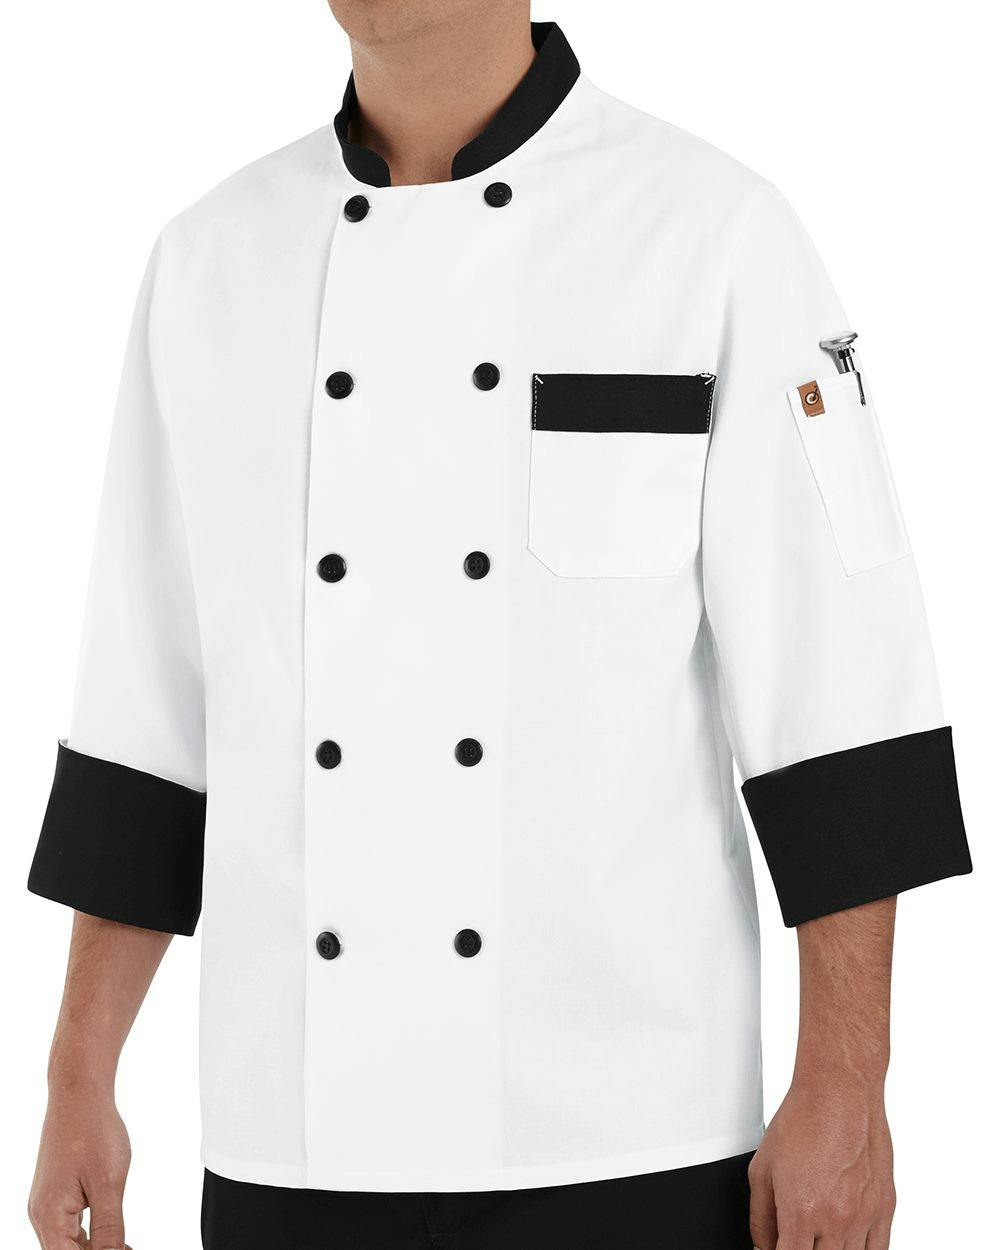 Image for Garnish Chef Coat - KT74